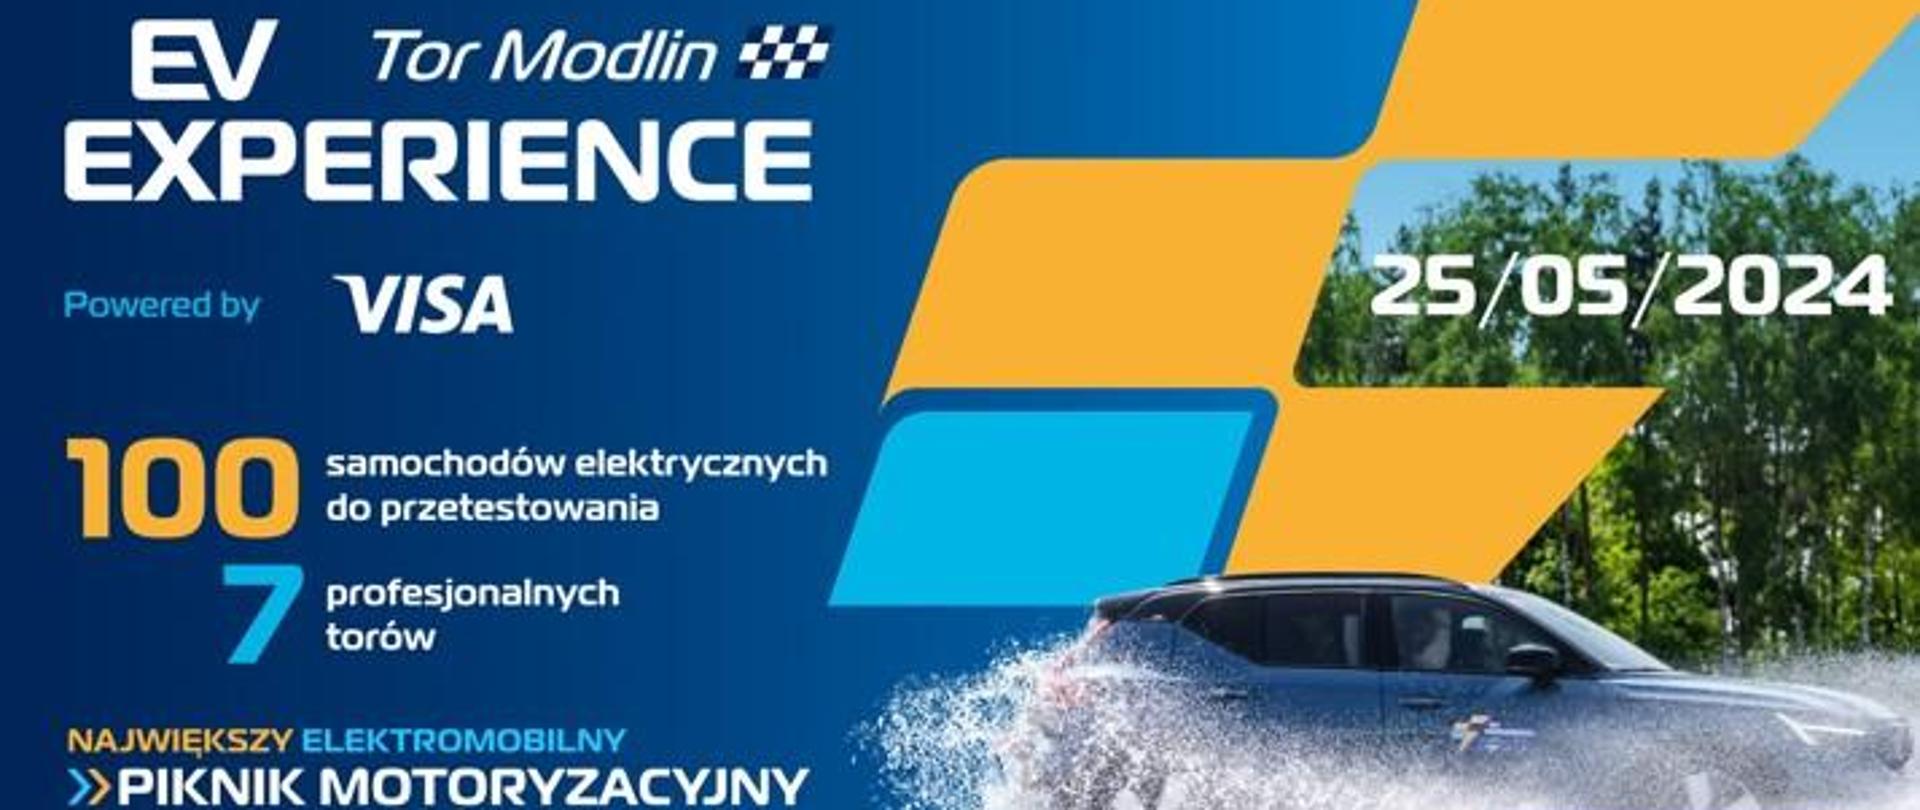 Plakat informacyjno-promocyjny oraz informacja o wydarzeniu EV Experience, które odbędzie 24-25 maja 2024 w Modlinie.